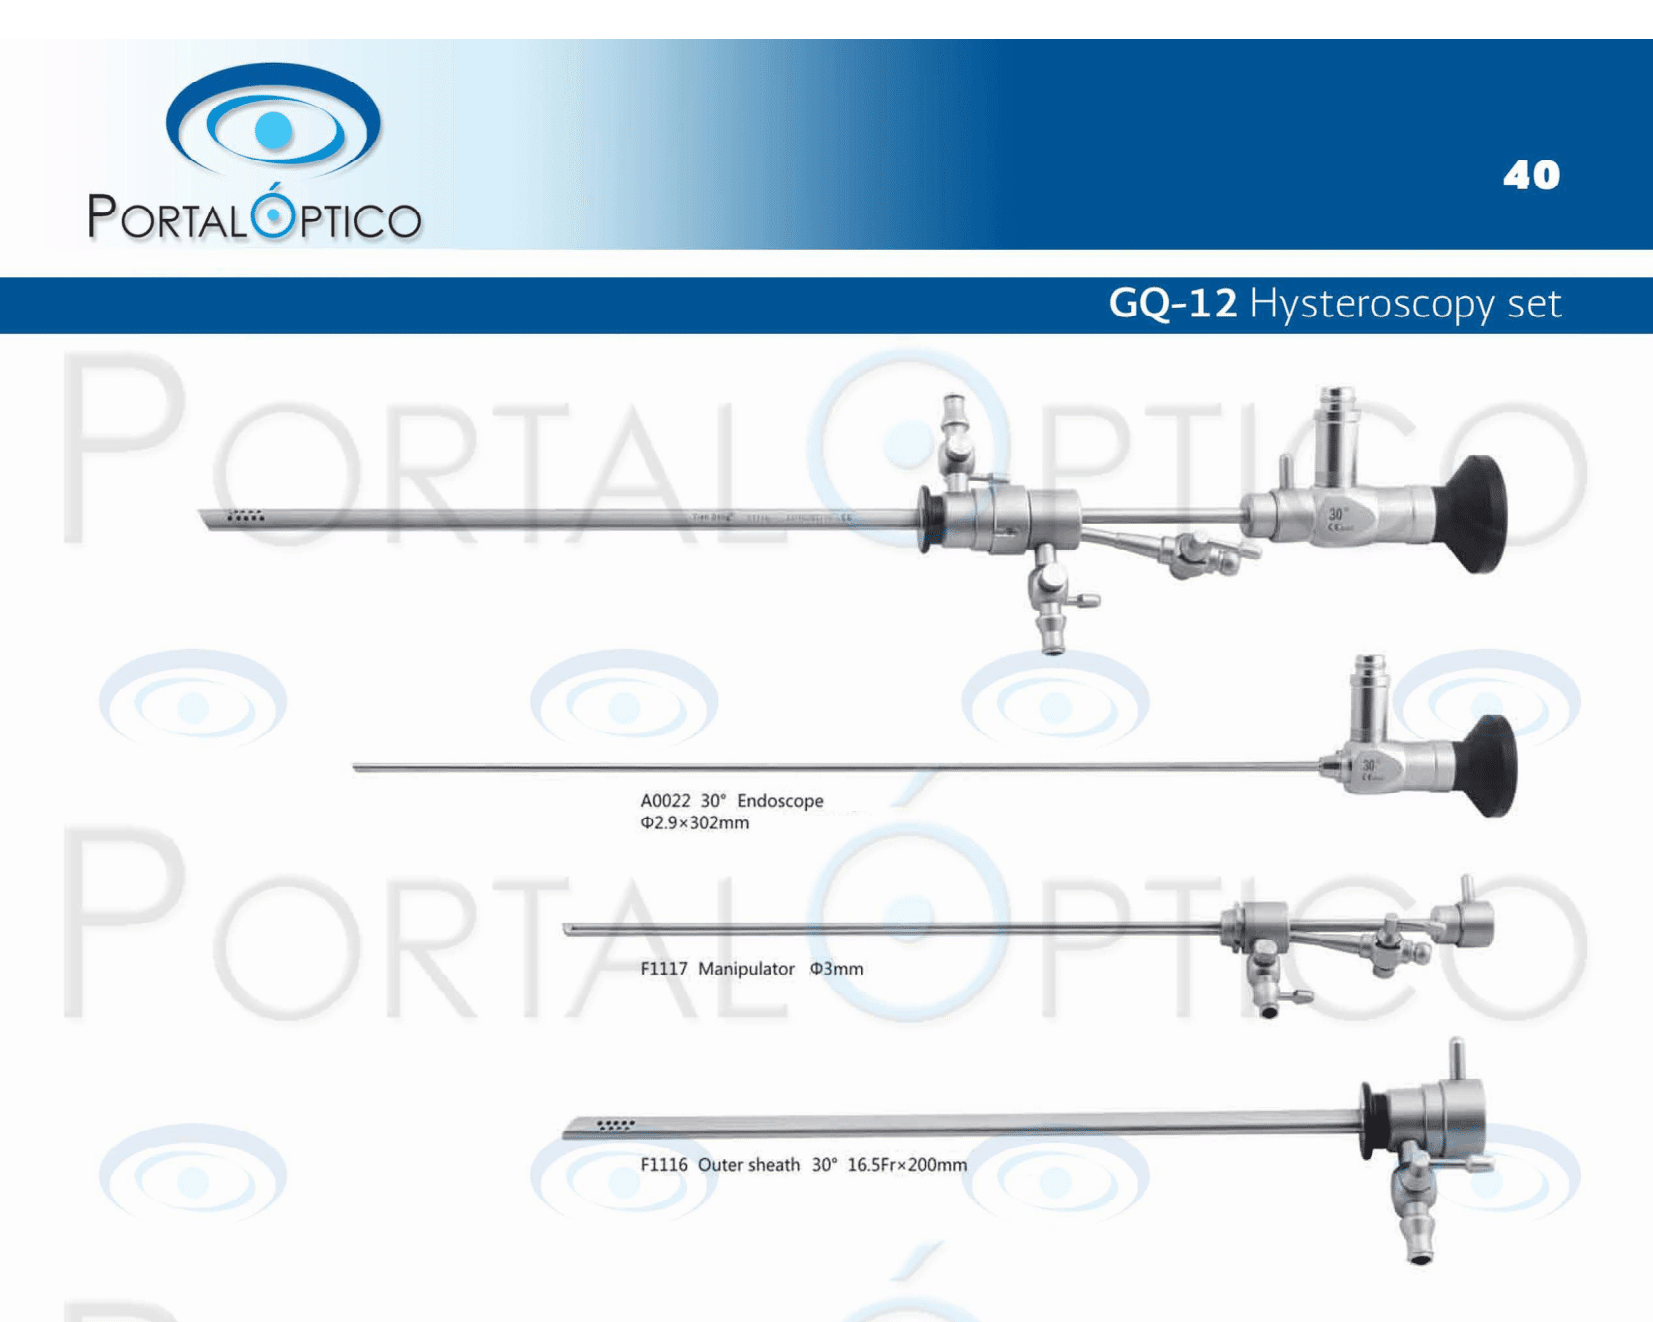 Set de Histeroscopio tipo BETTOCCHI diagnostica y quirurgica con lente de 2.9 mm, con camisas instrumentos puente inyterno para pinzas flexibles -0